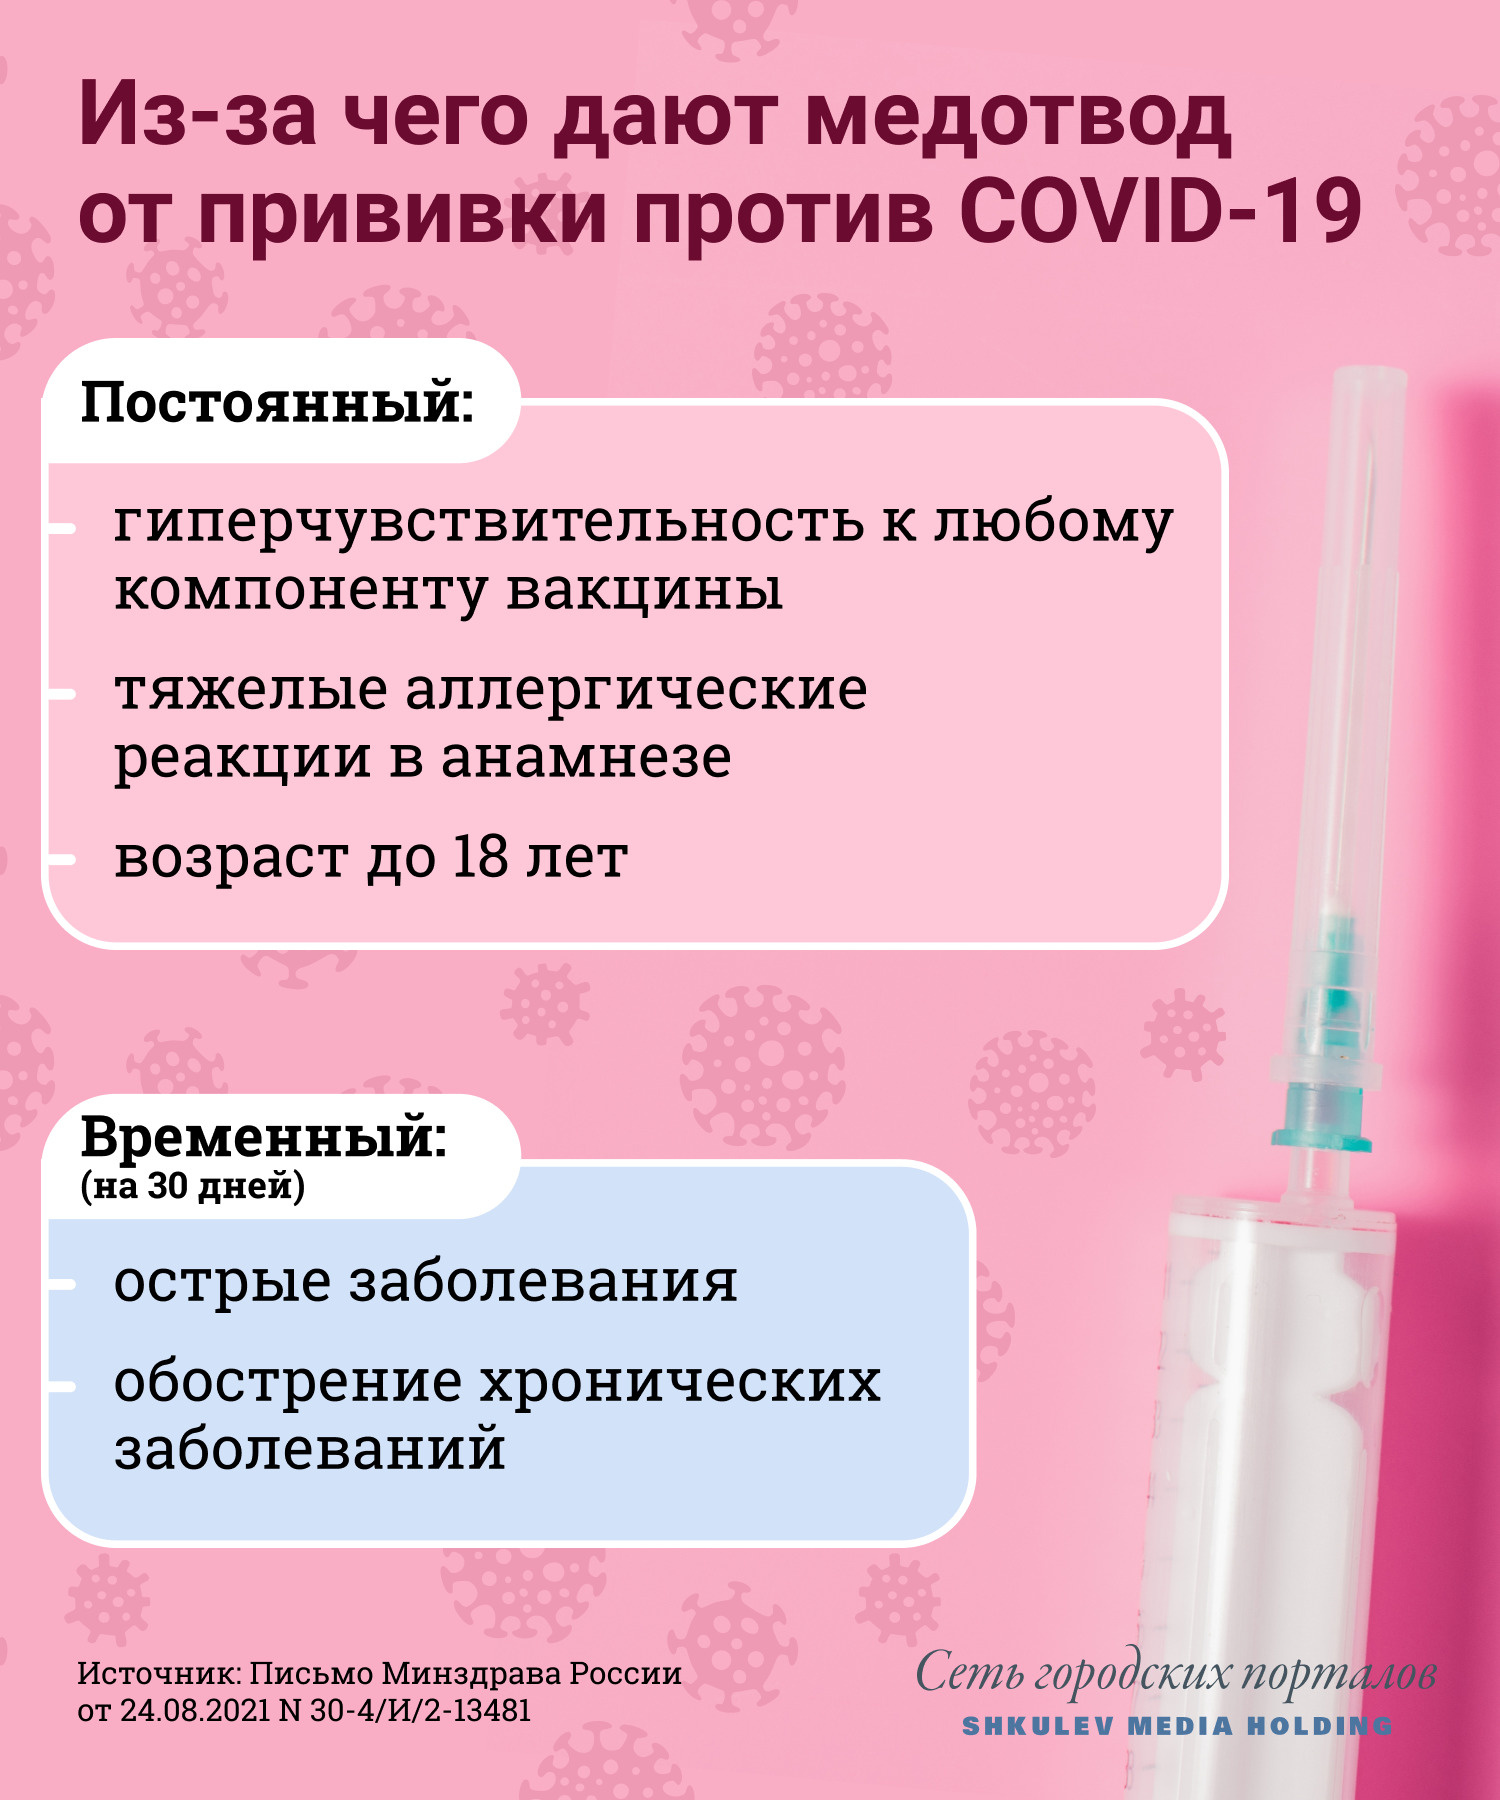 Список причин для медотвода от прививки против ковида небольшой